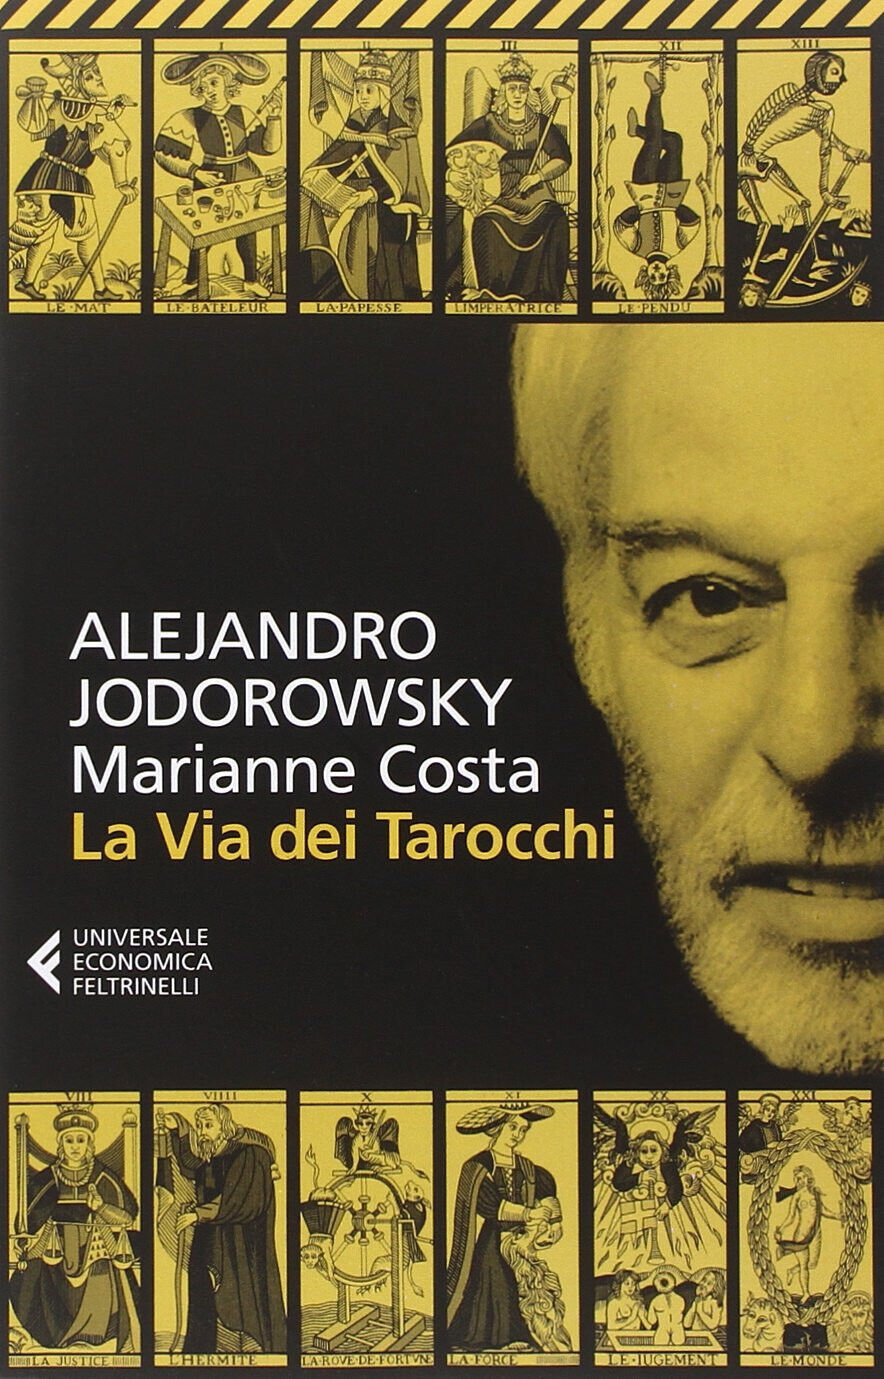 La via dei tarocchi - Alejandro Jodorowsky, Marianne Costa - Fltrinelli, 2014